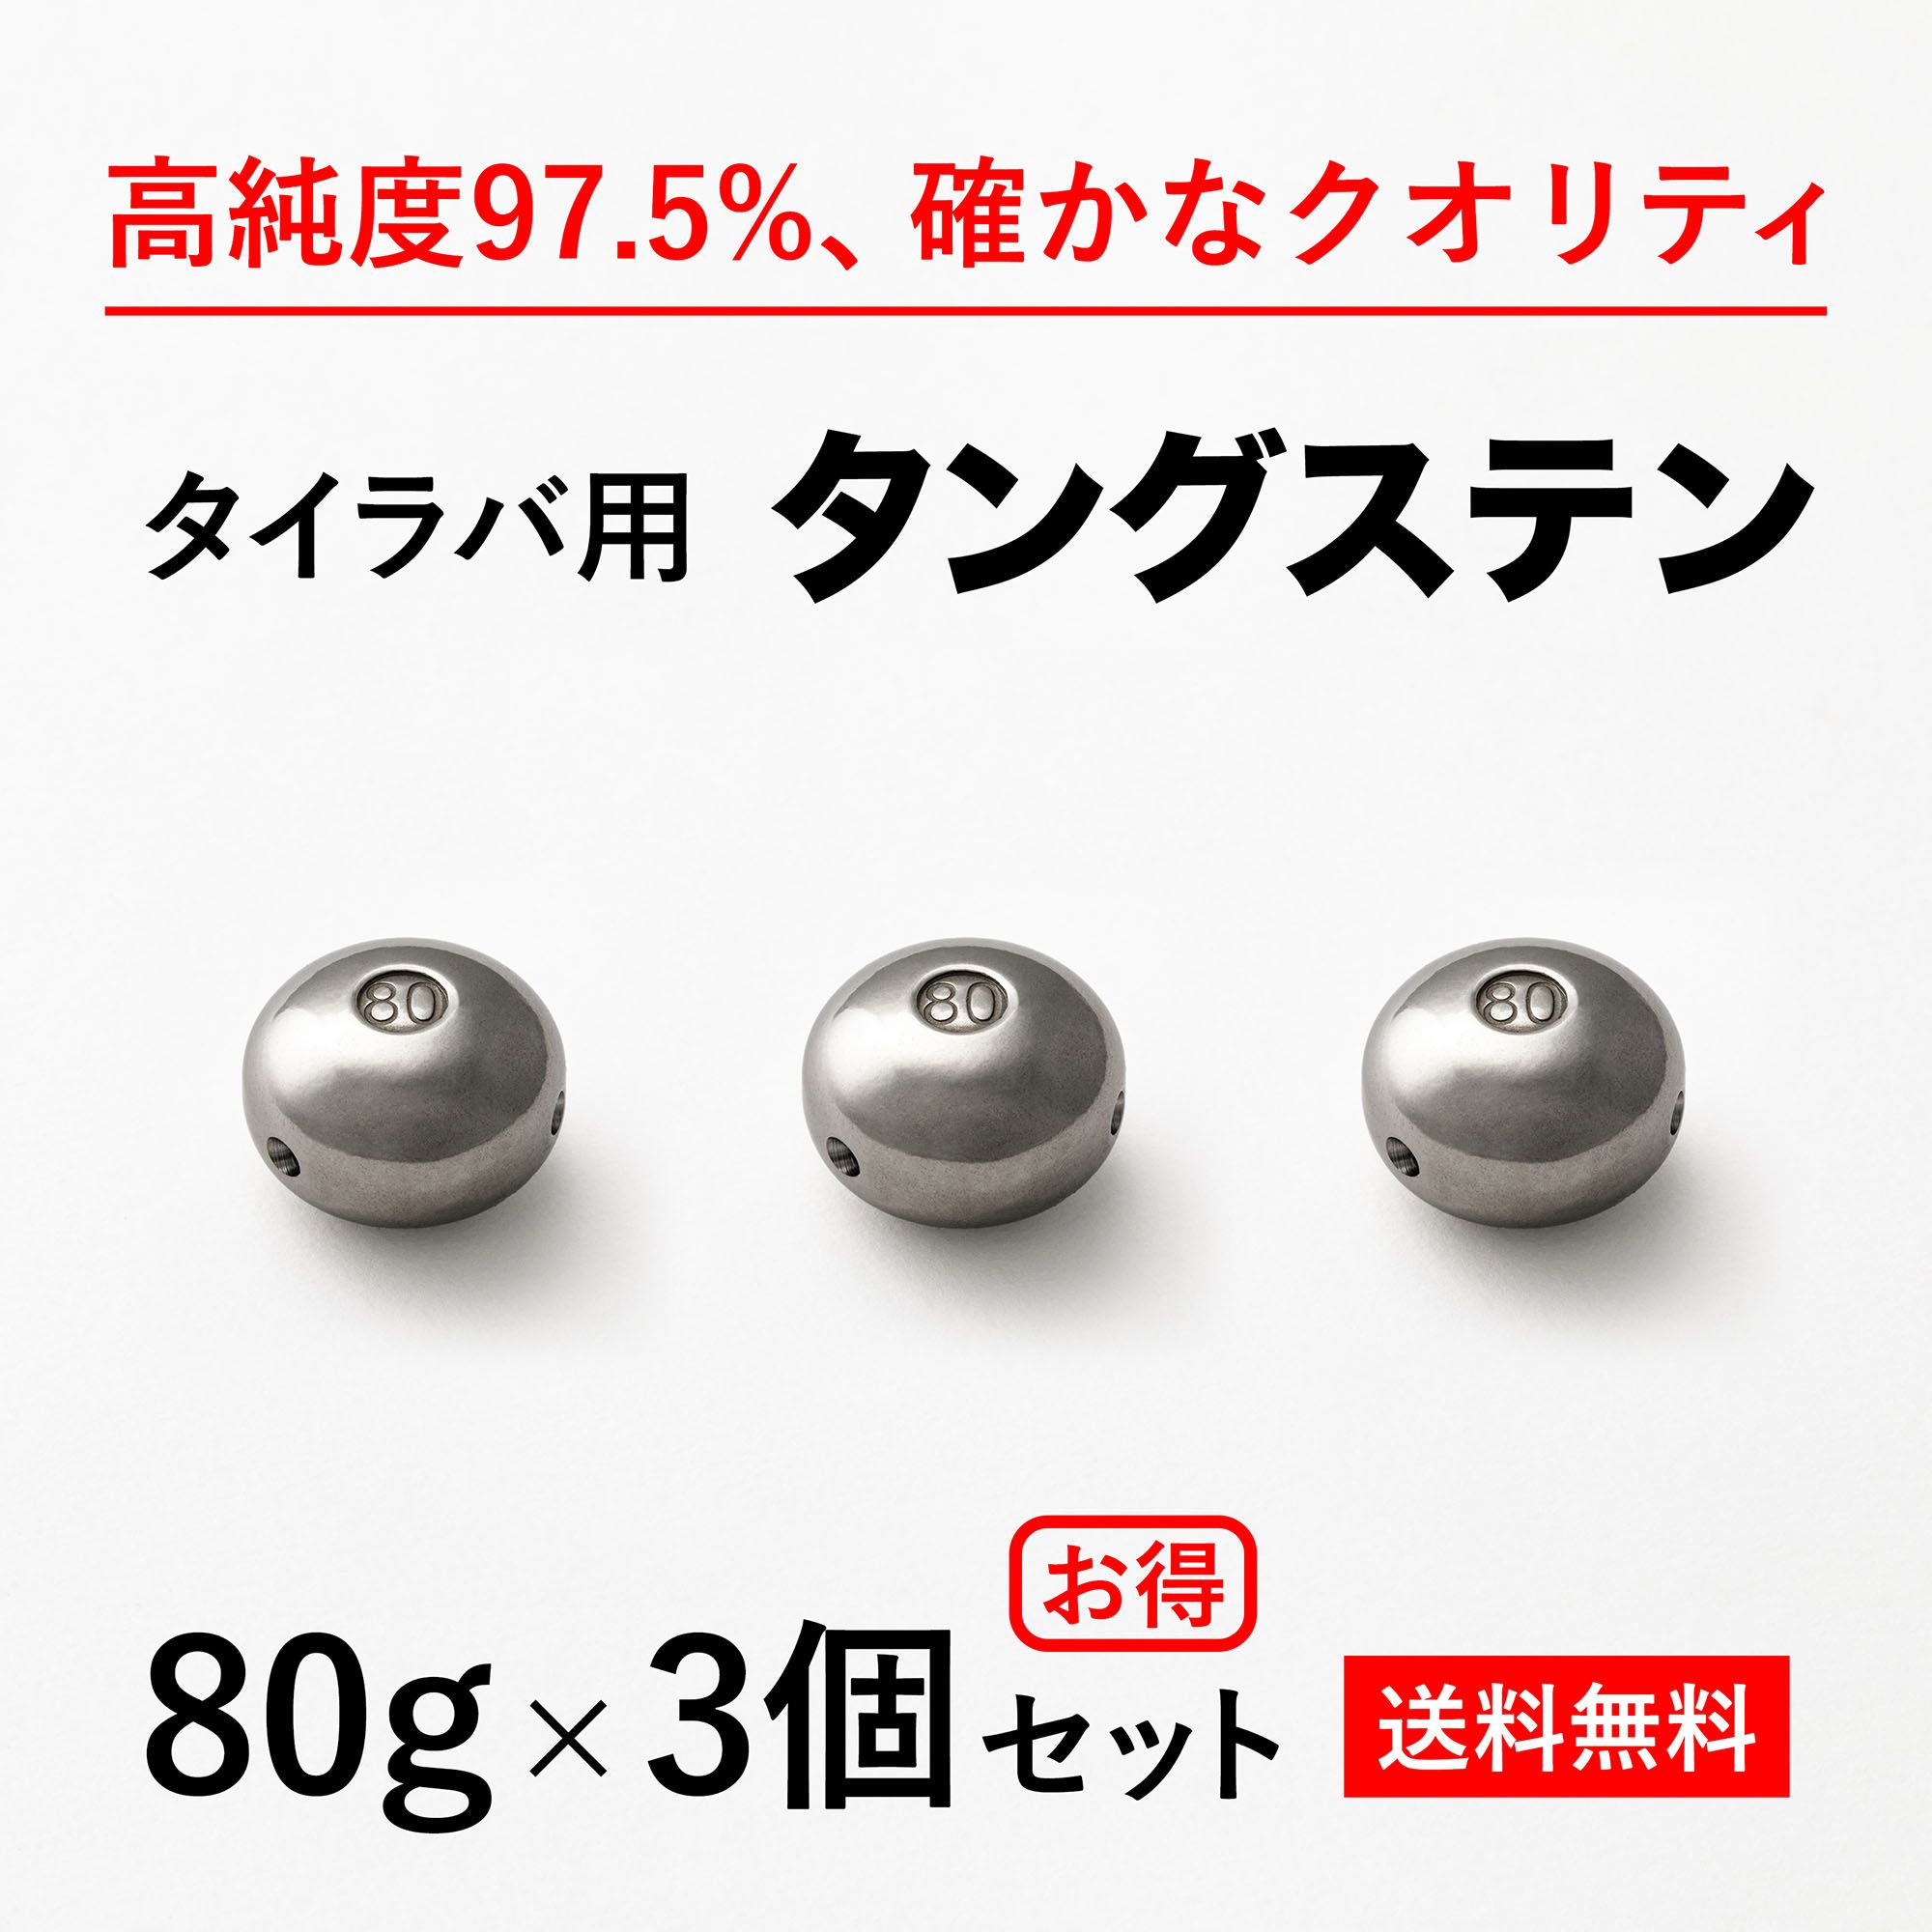 【楽天市場】80g 3個 送料無料 タイラバ タングステン ヘッド 高品質 